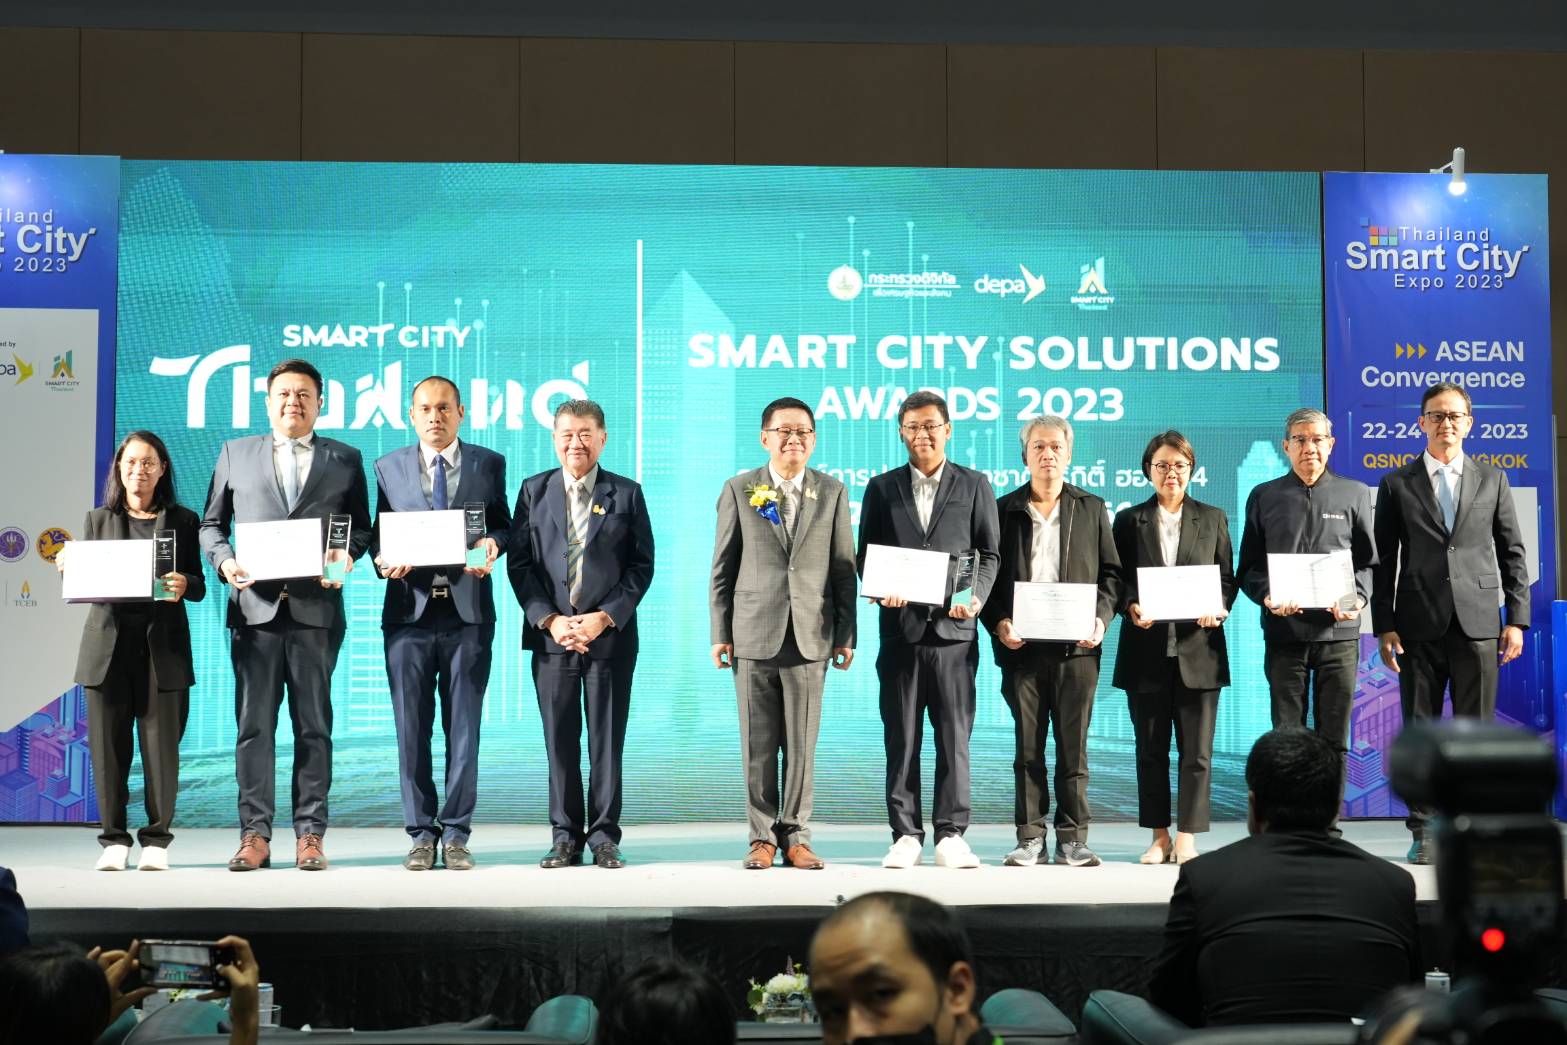 ก.ดีอี – ดีป้า เปิดงาน Thailand Smart City Expo 2023 มหกรรมแสดงเทคโนโลยีนวัตกรรมดิจิทัลด้านการพัฒนาเมืองอัจฉริยะระดับนานาชาติ